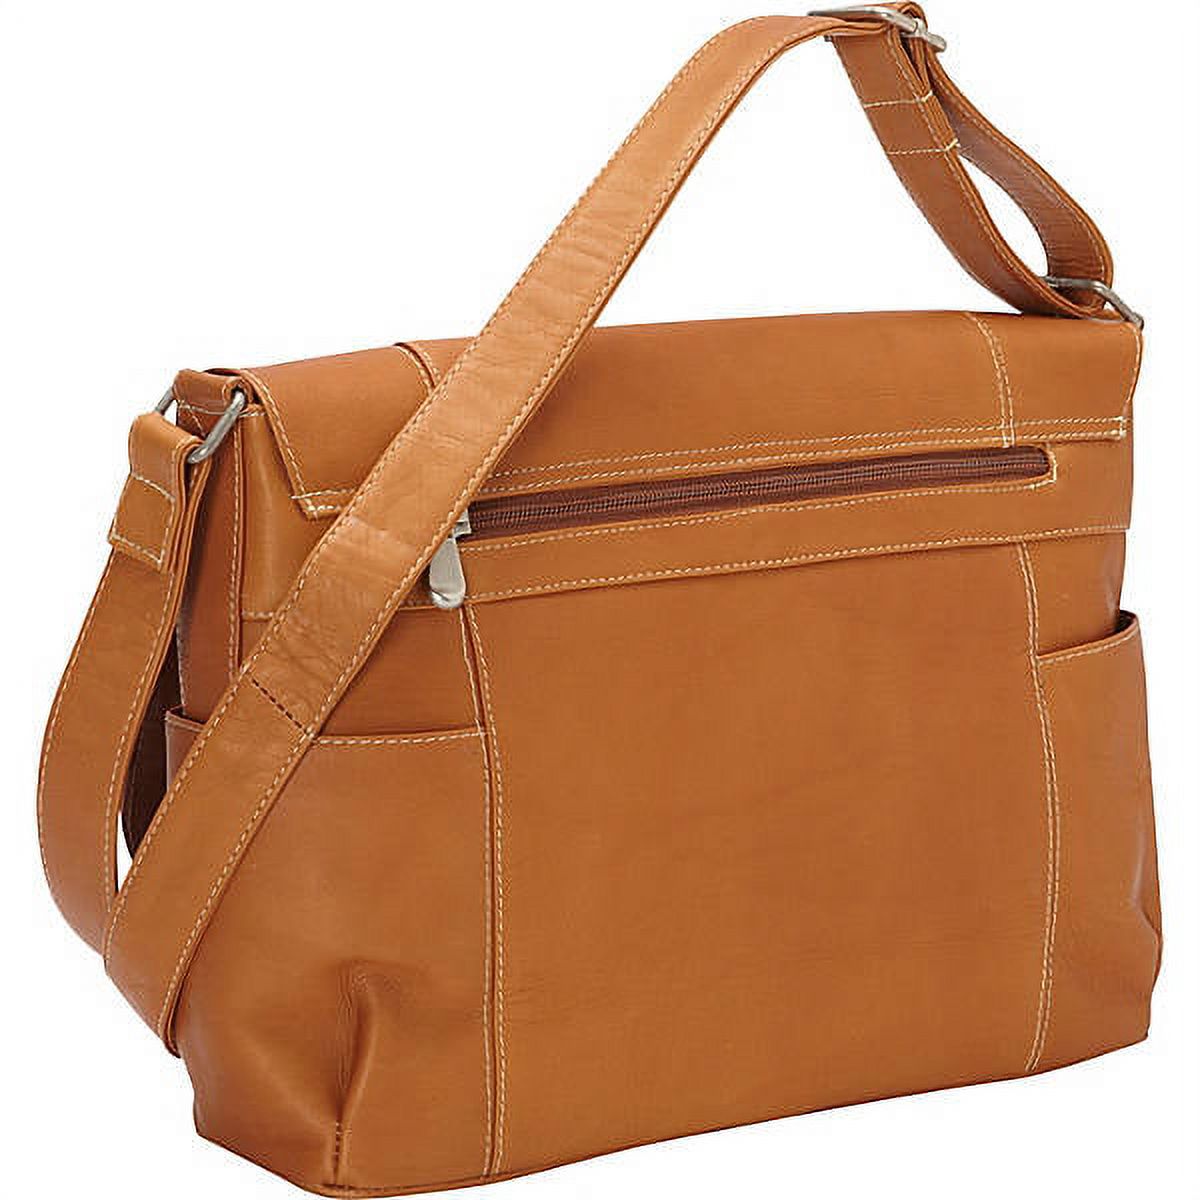 Le Donne Leather Flap Over Shoulder Bag LD-5004 - image 3 of 4